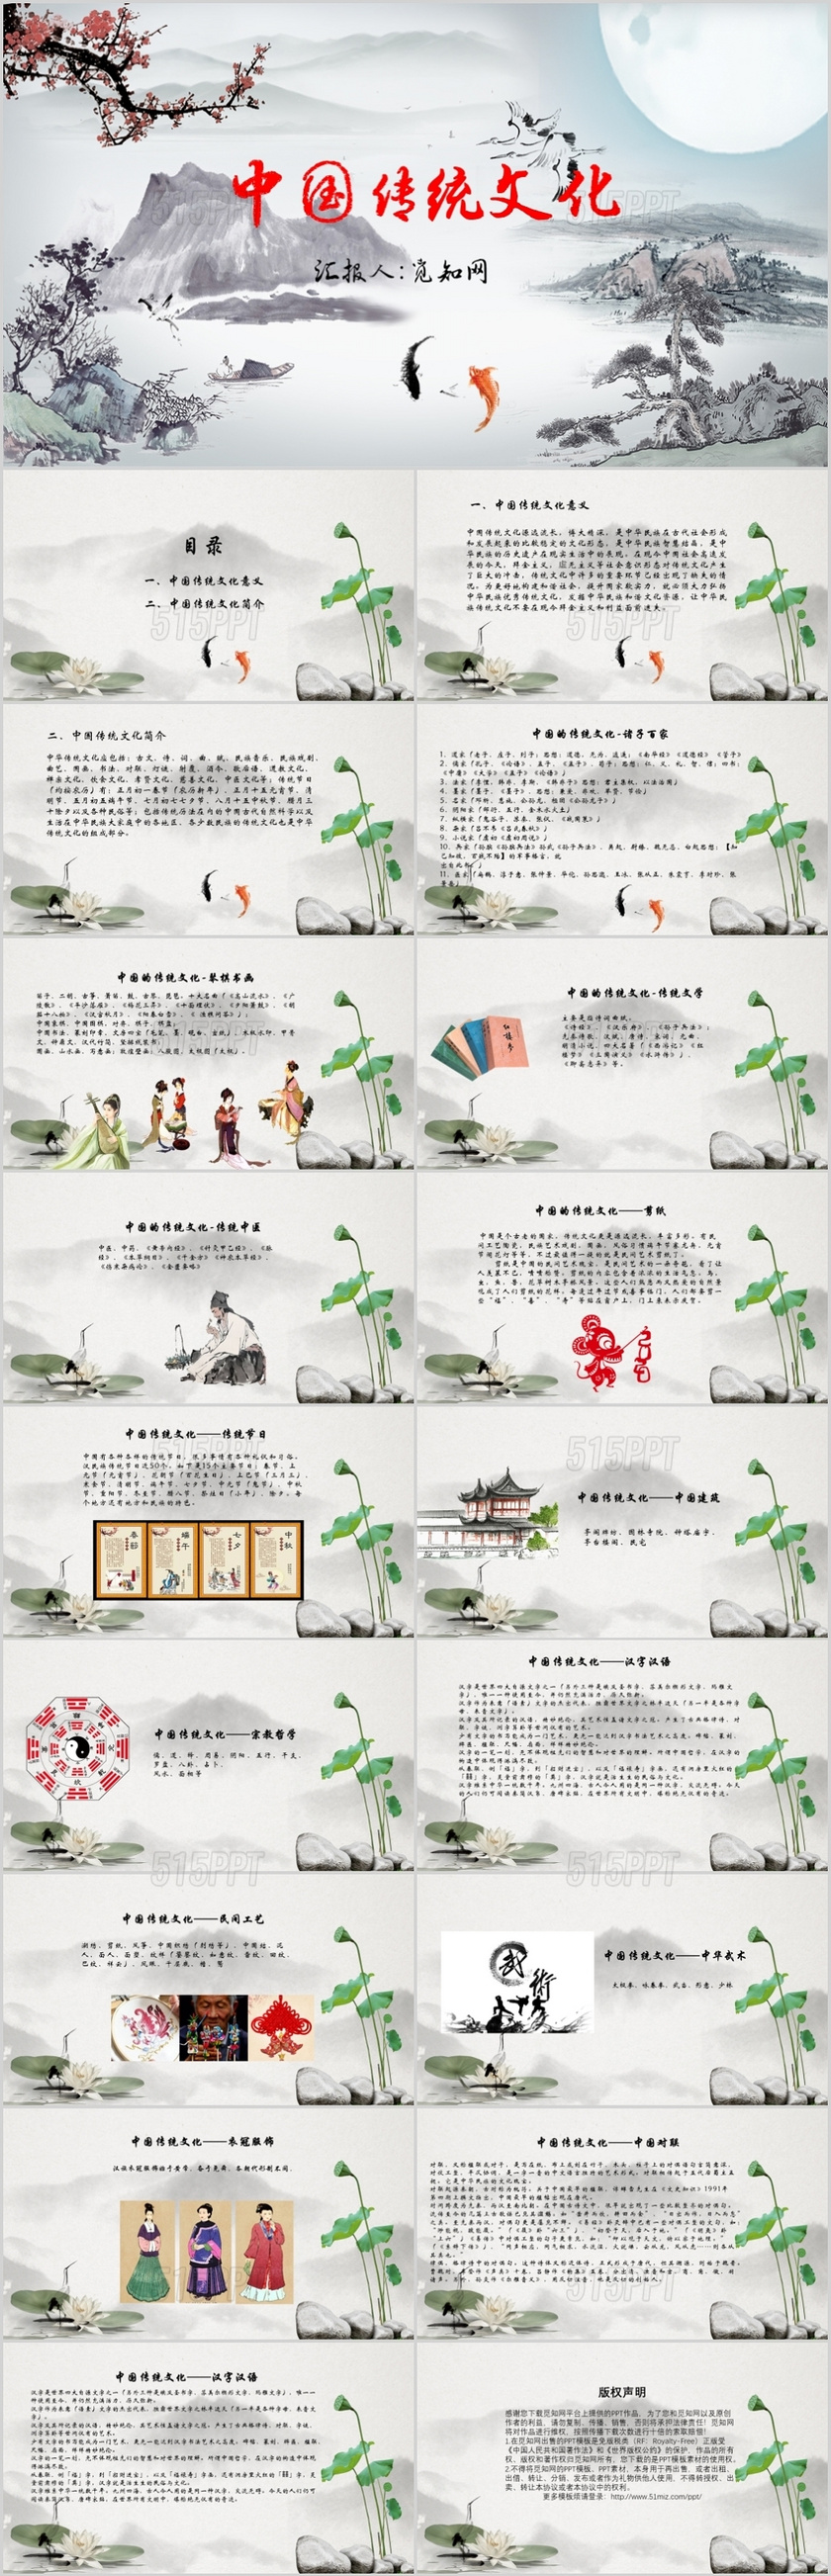 中国传统文化传统节日民间工艺PPT模板